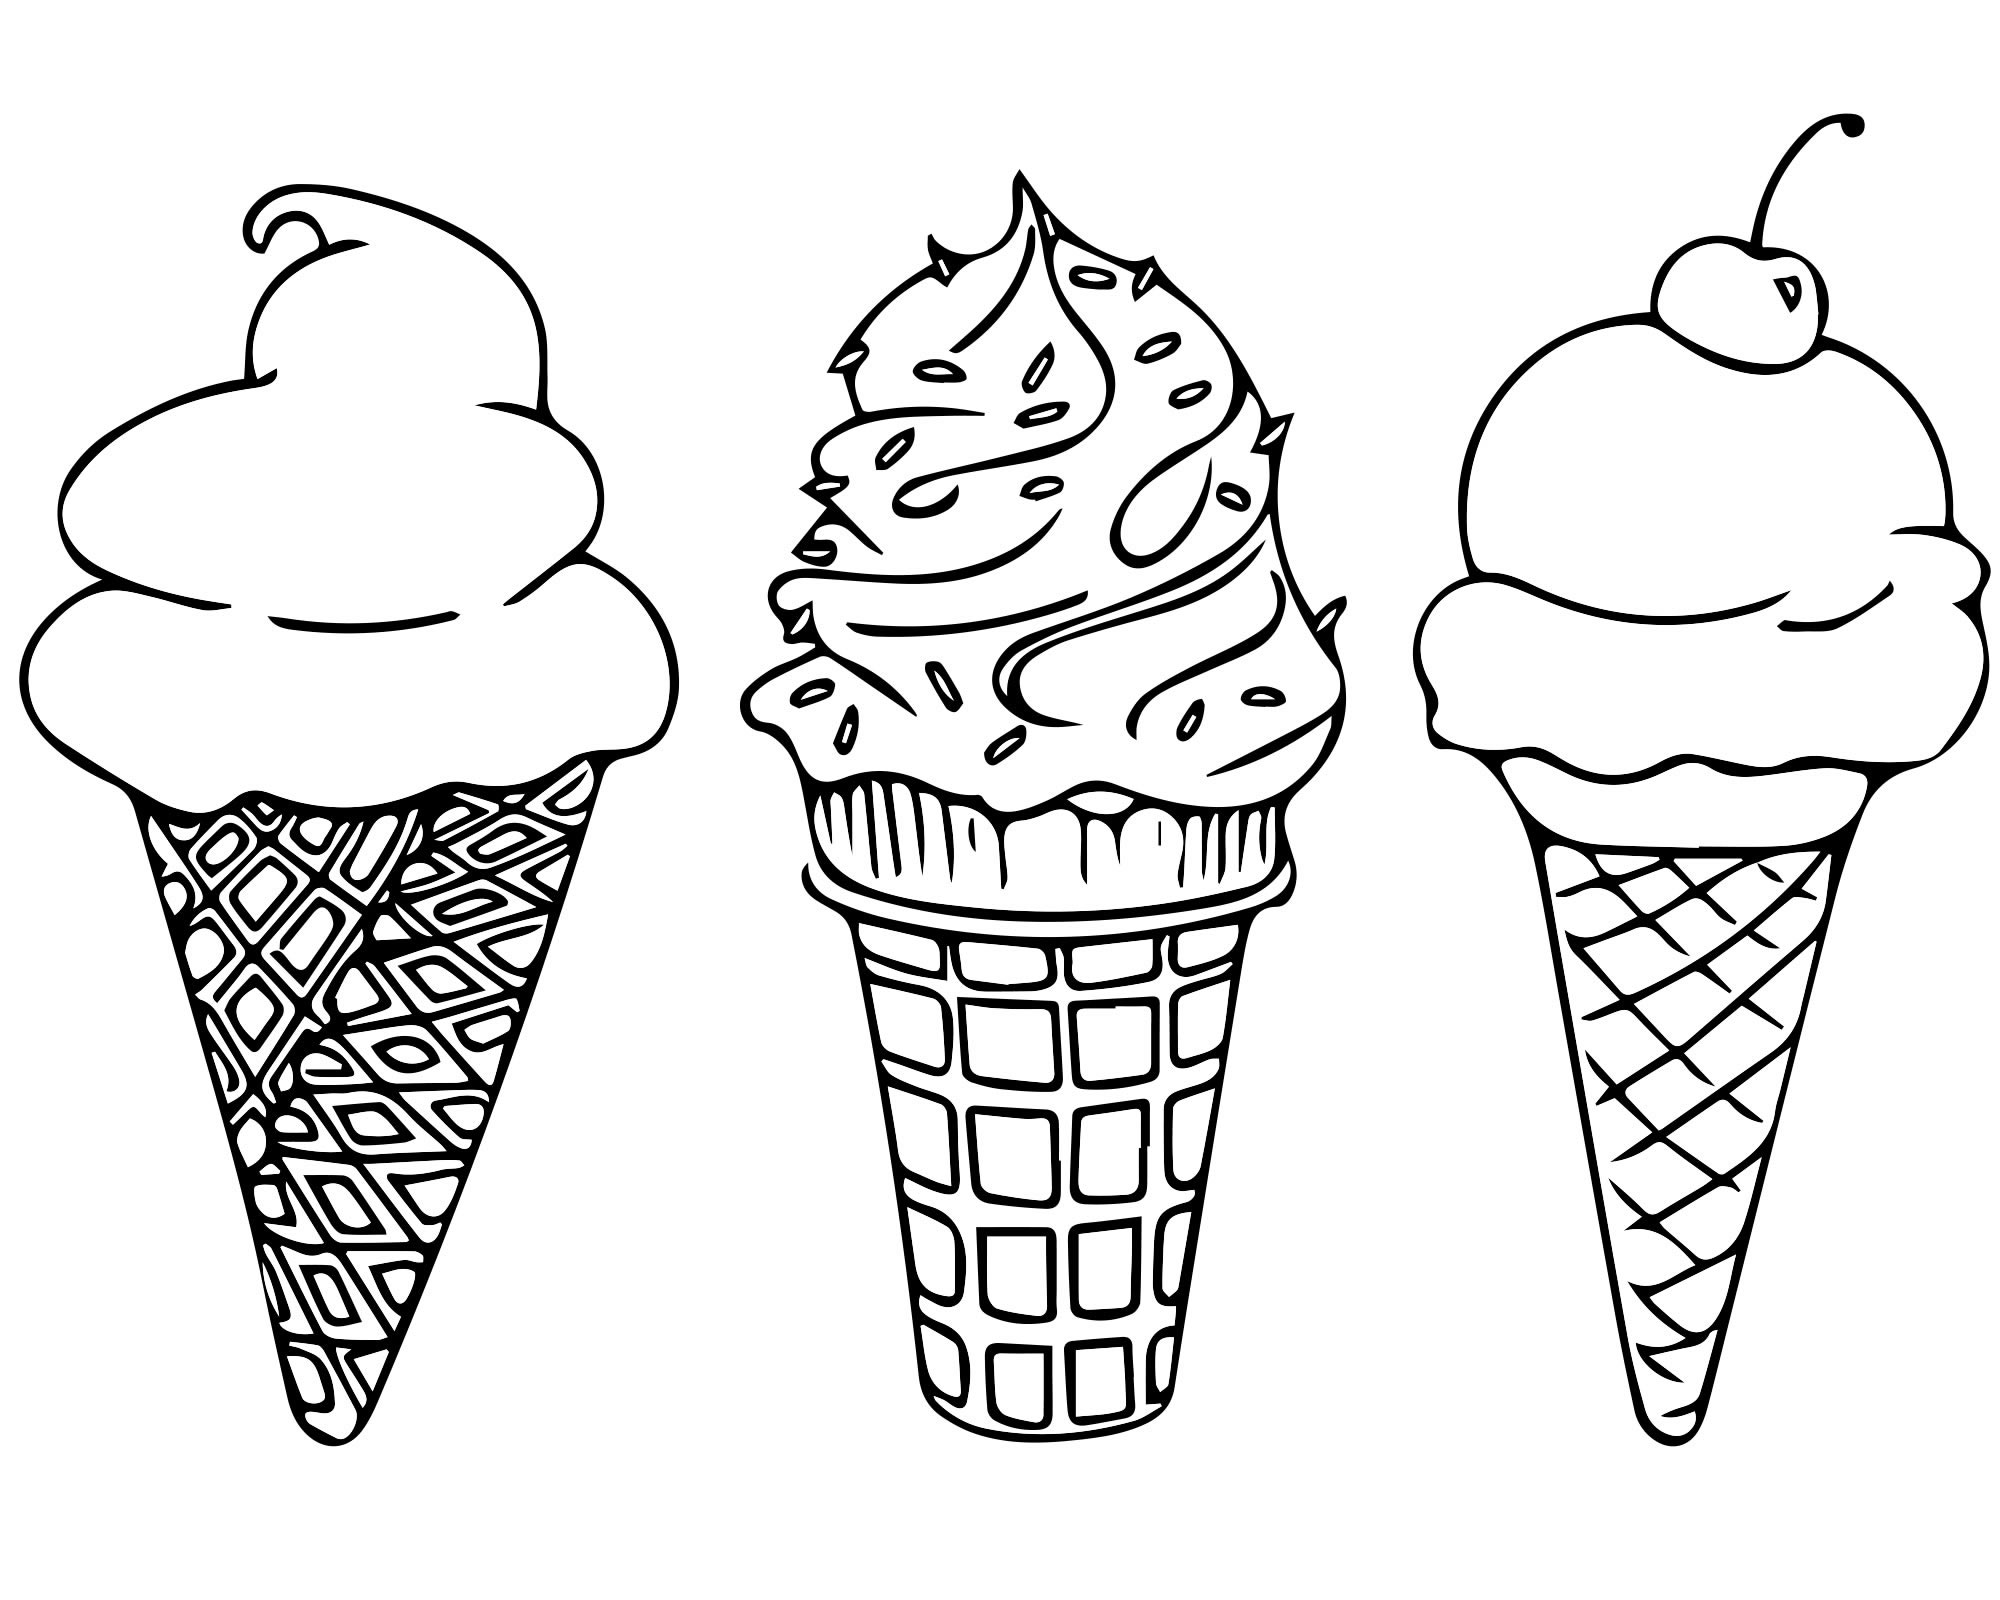 Раскраски Мороженое: 56 вкусных раскрасок с мороженым для детей и взрослых